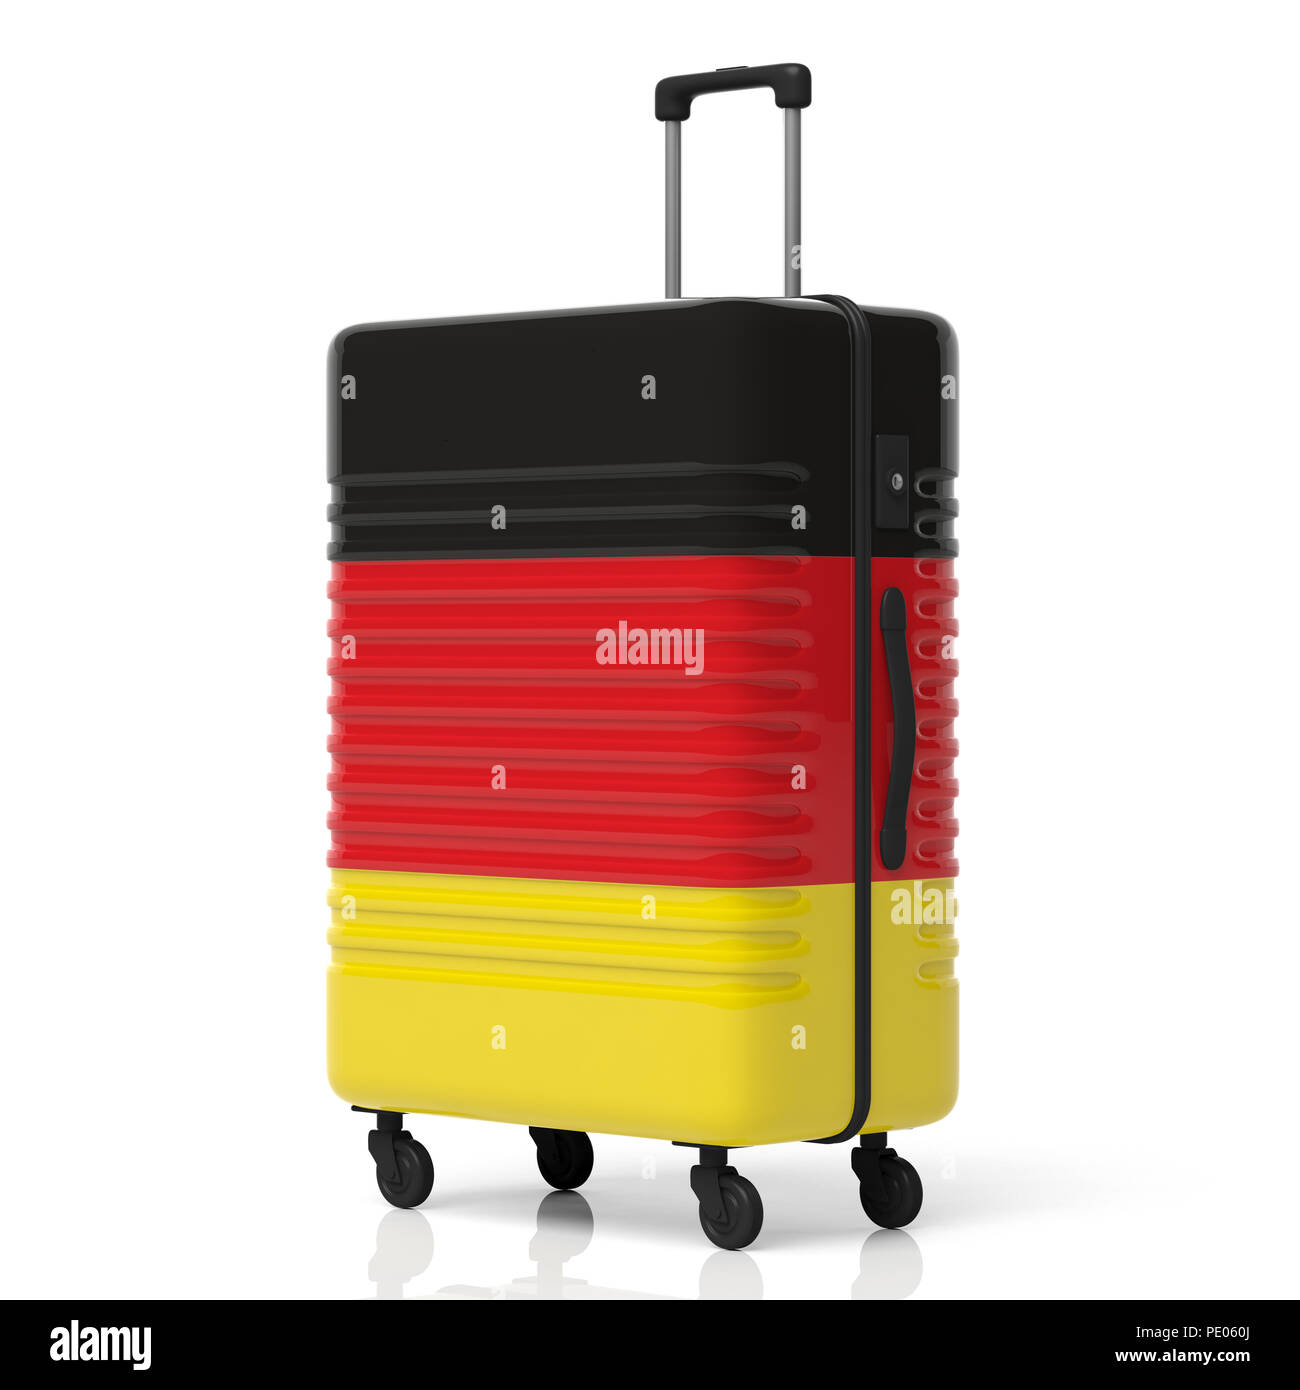 Germania destinazione di viaggio concetto. Bandiera tedesca valigia isolati su sfondo bianco. 3d illustrazione Foto Stock